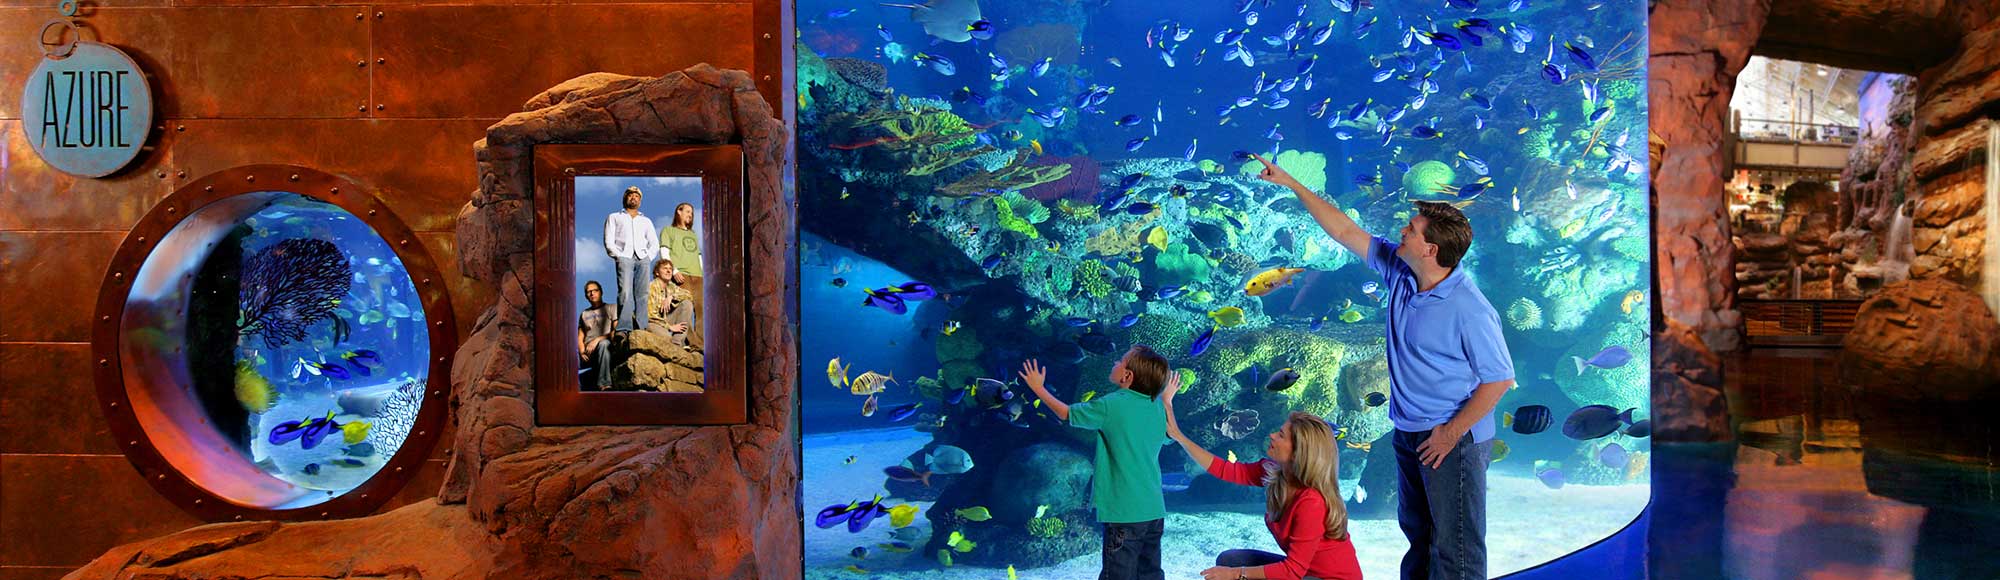 The Aquarium At The Silverton Hotel